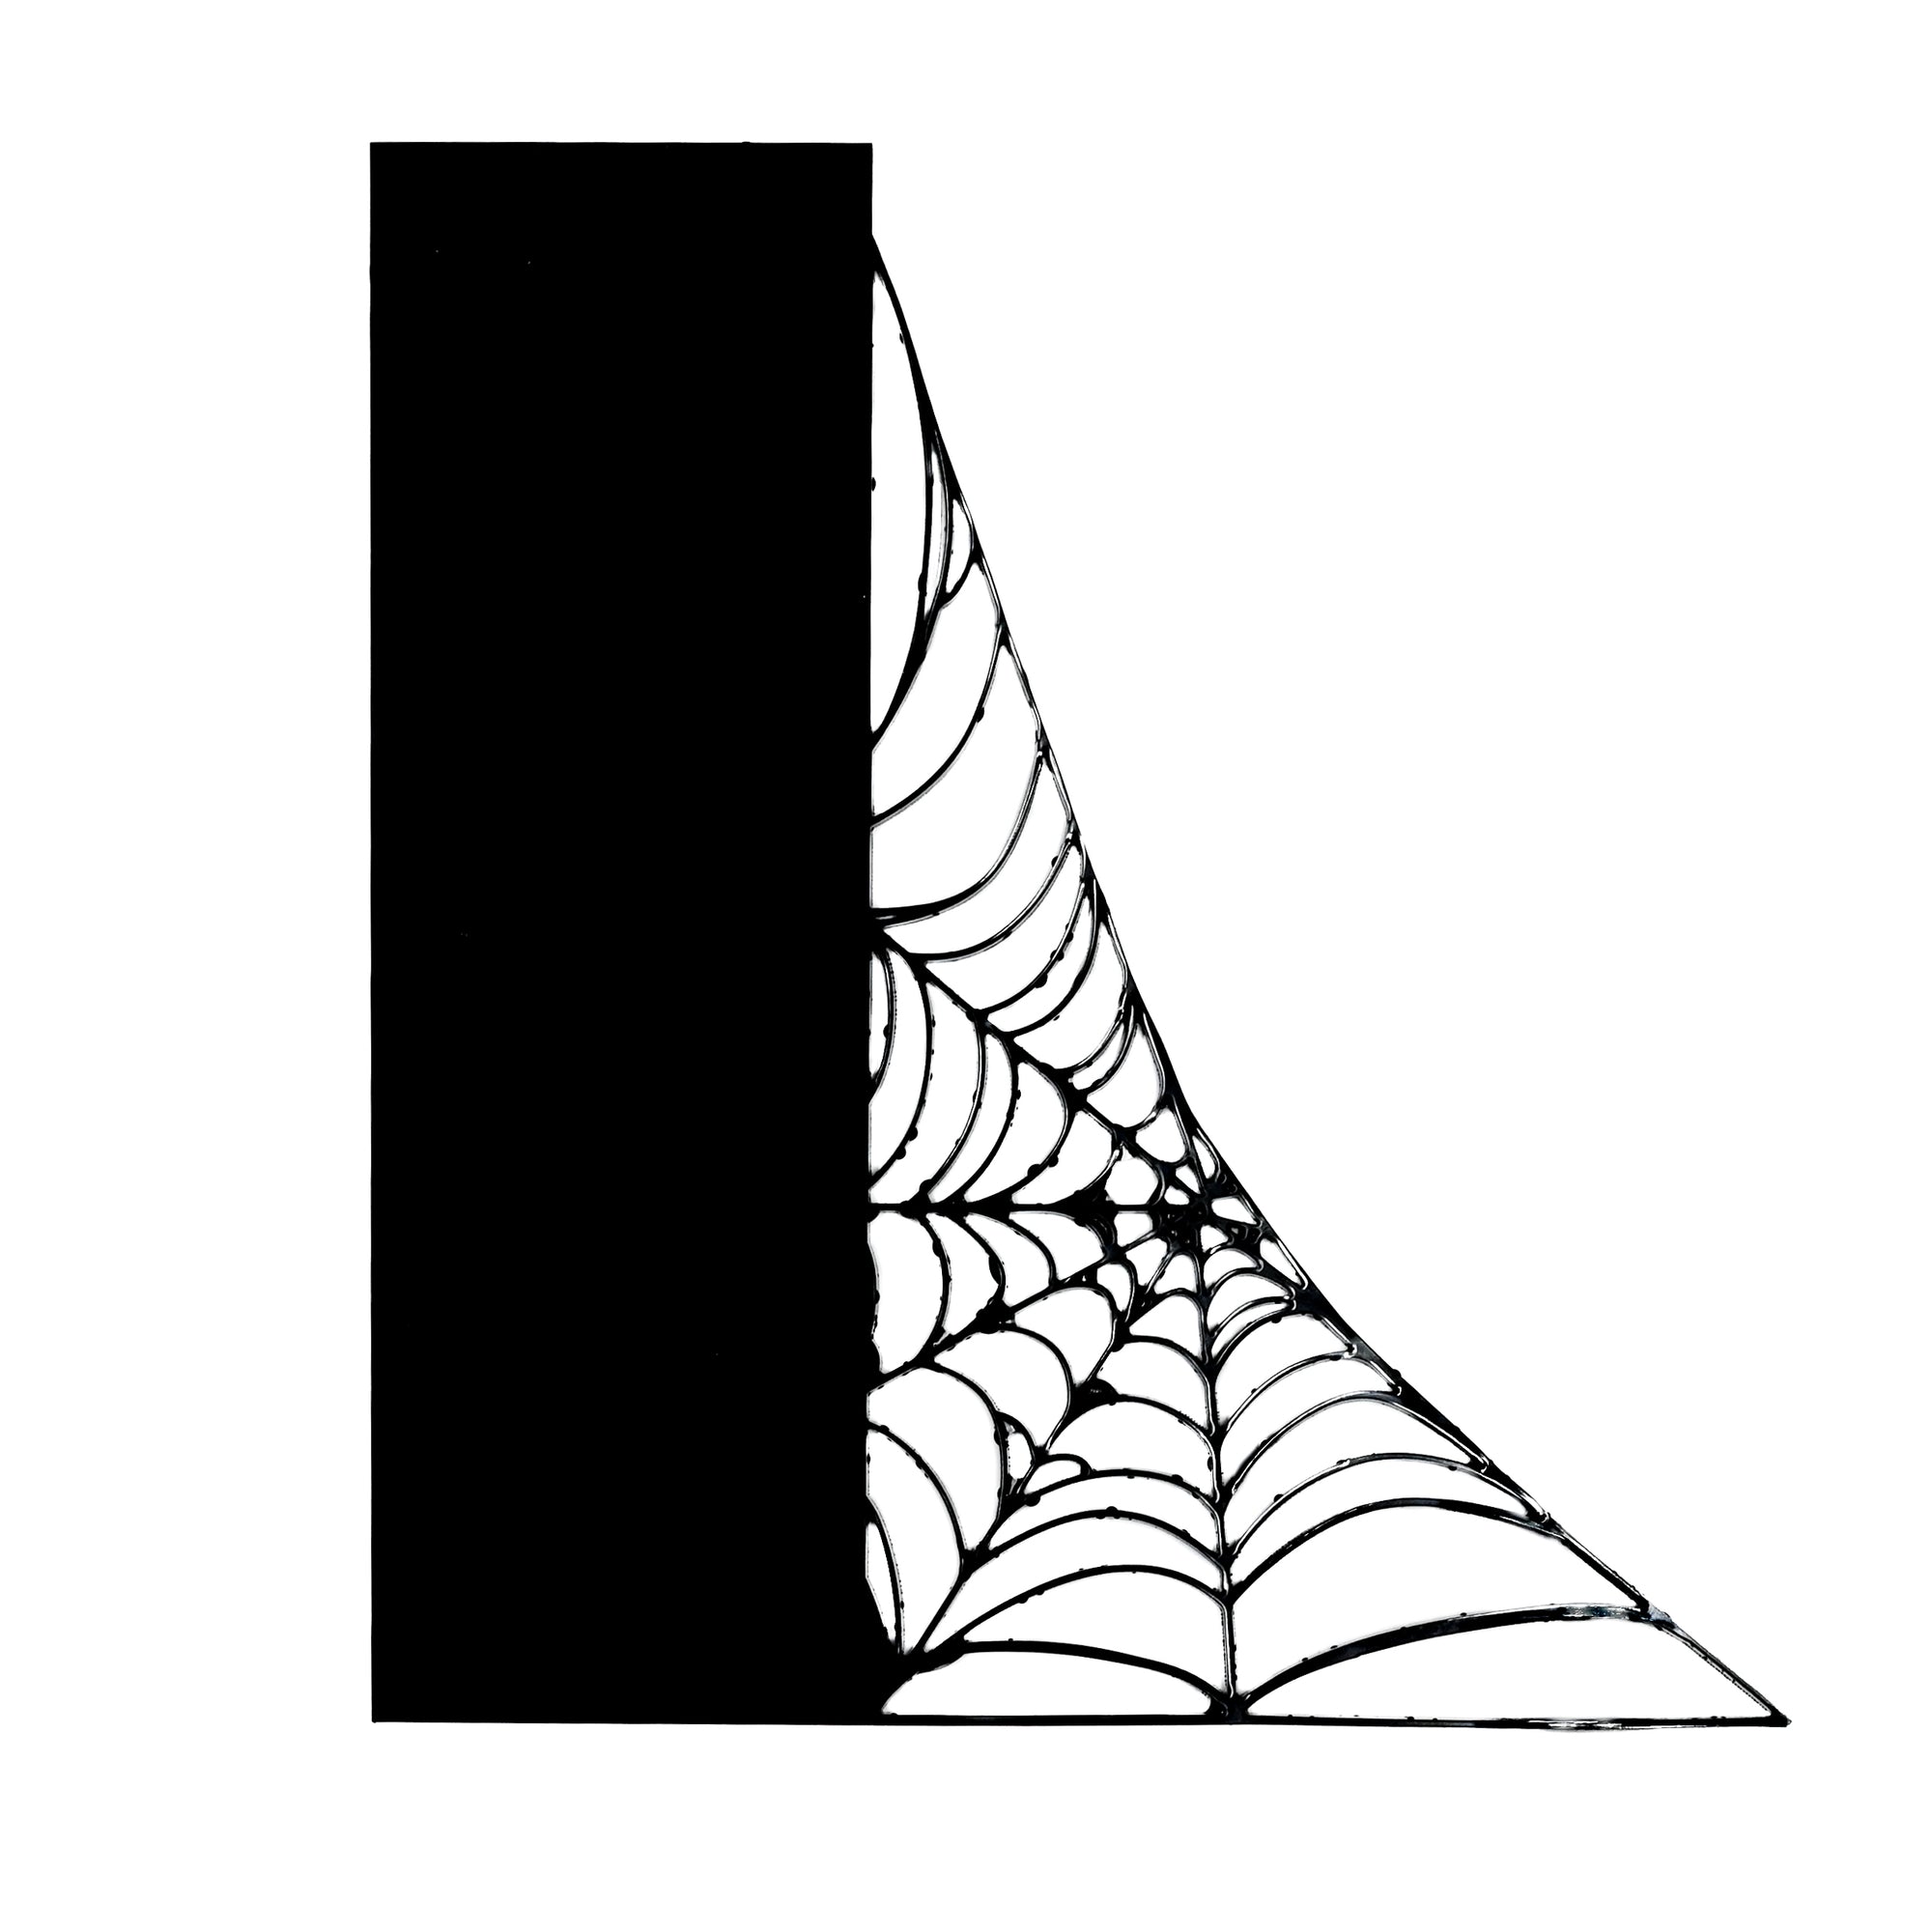 Spiderweb Bookshelf Silhouette [Newsletter Exclusive]